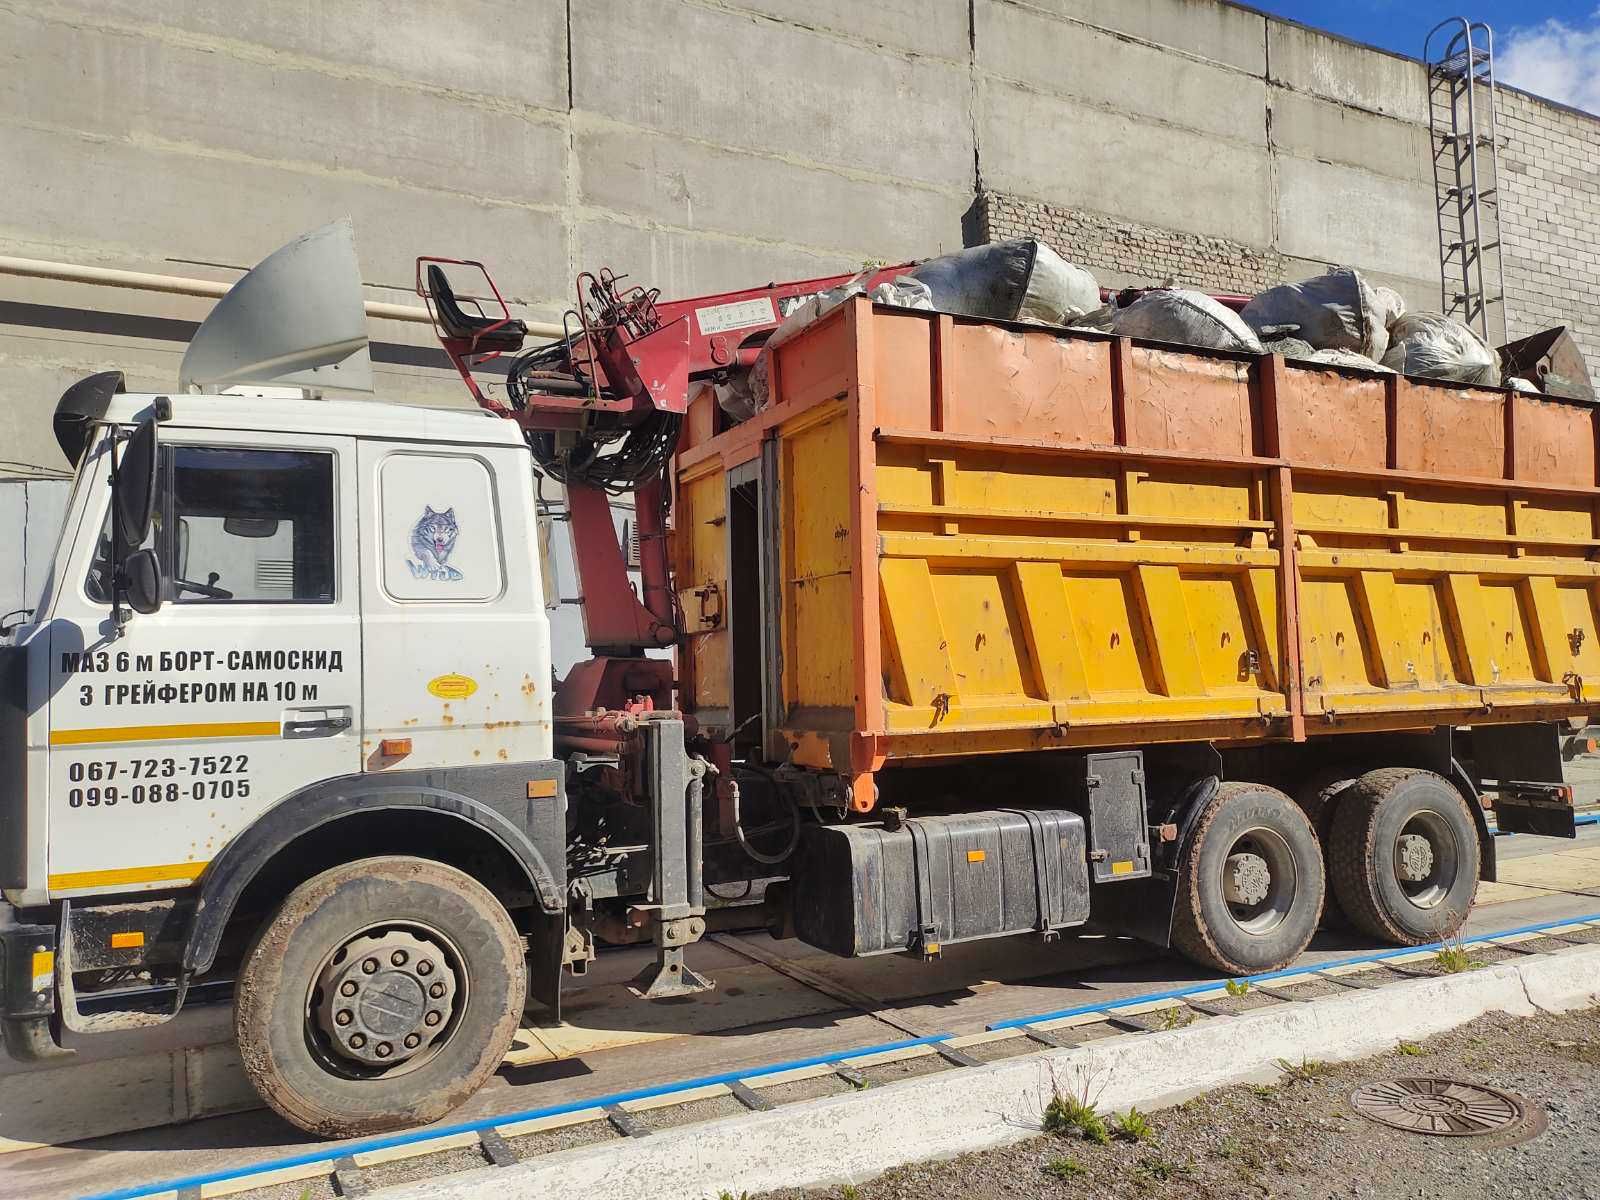 Перевозки. Вывоз мусора МАЗ 6-7 м 20 т 30 кубов с Ковшом на 10 м